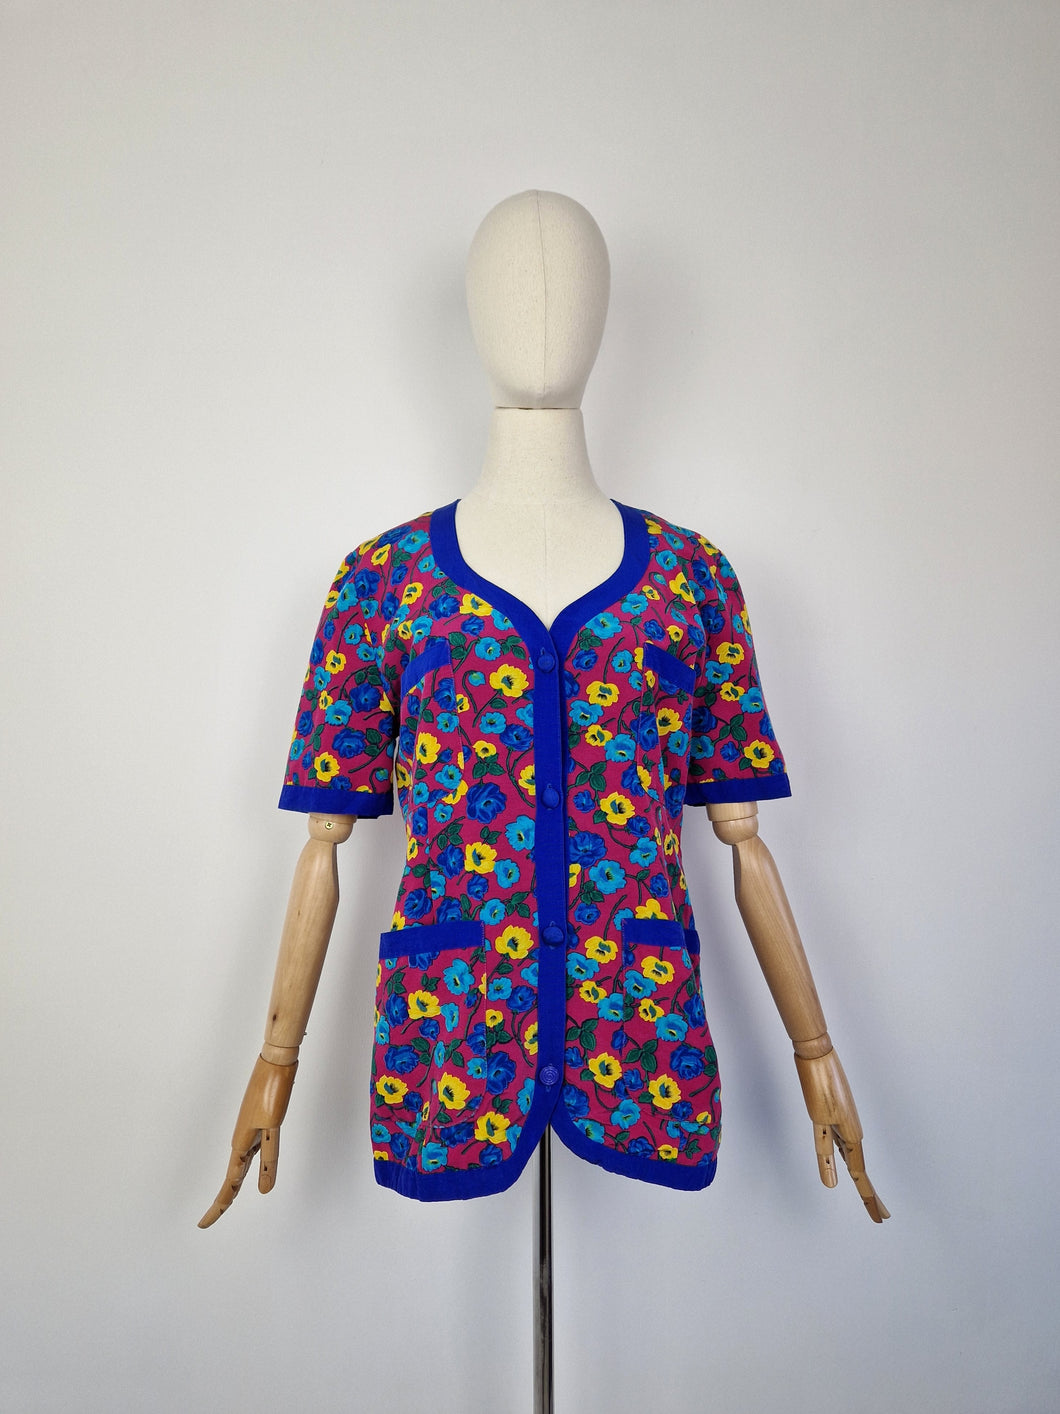 Vintage floral blouse